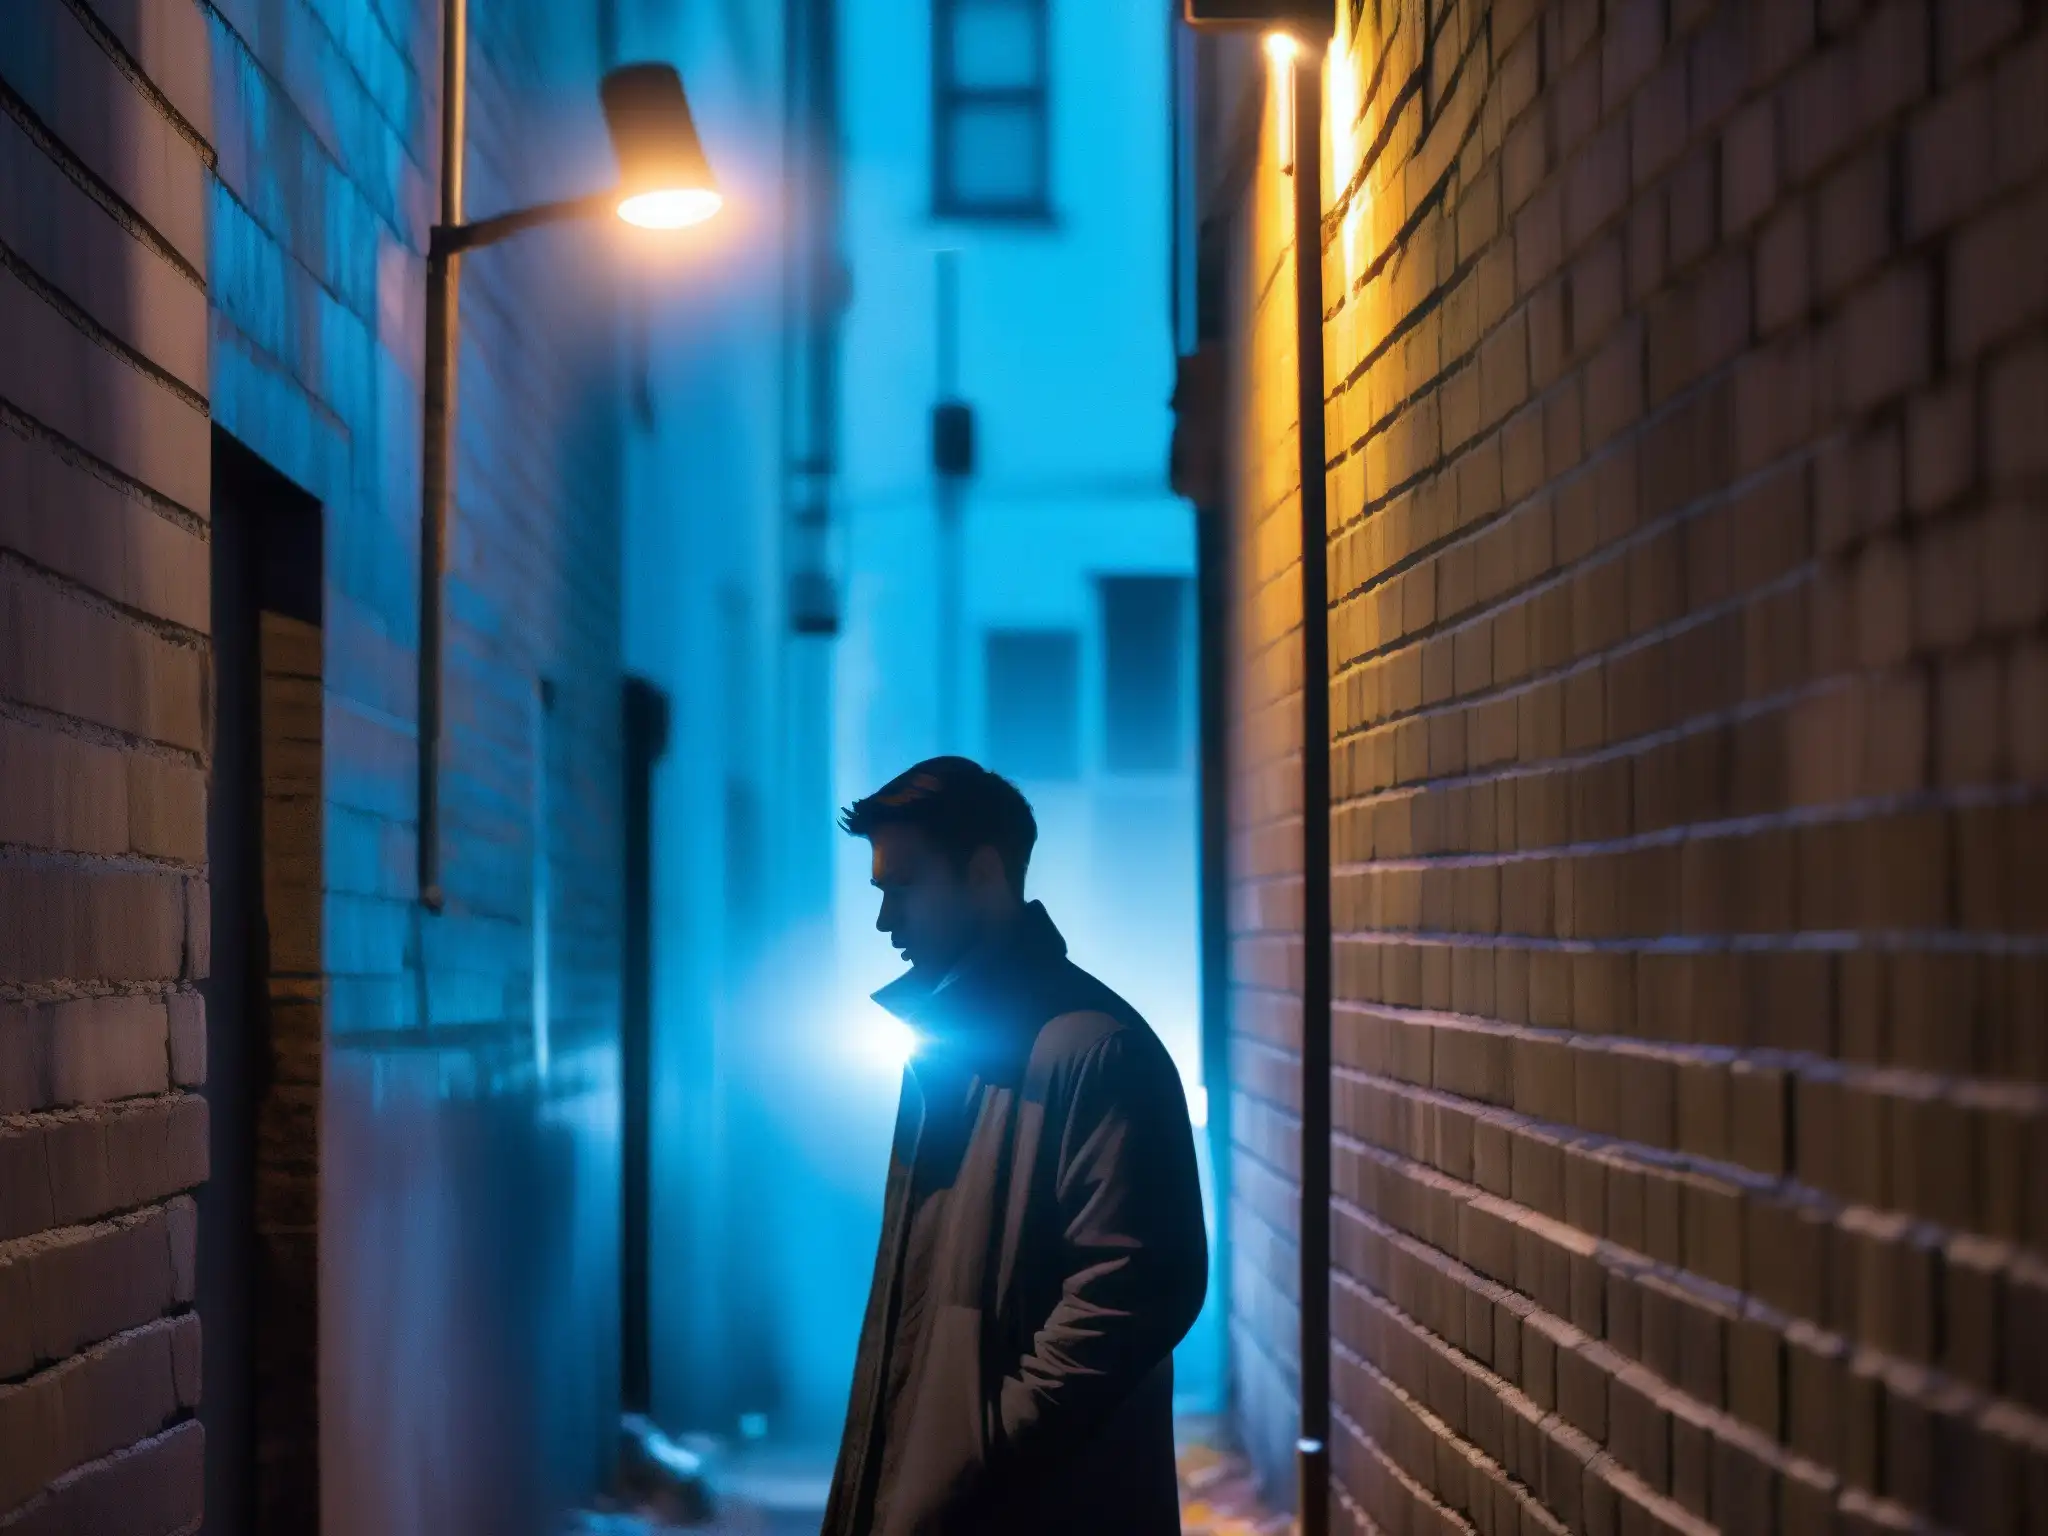 Un callejón misterioso iluminado por luz azul de un smartphone, evocando leyendas urbanas redes WiFi Bluetooth